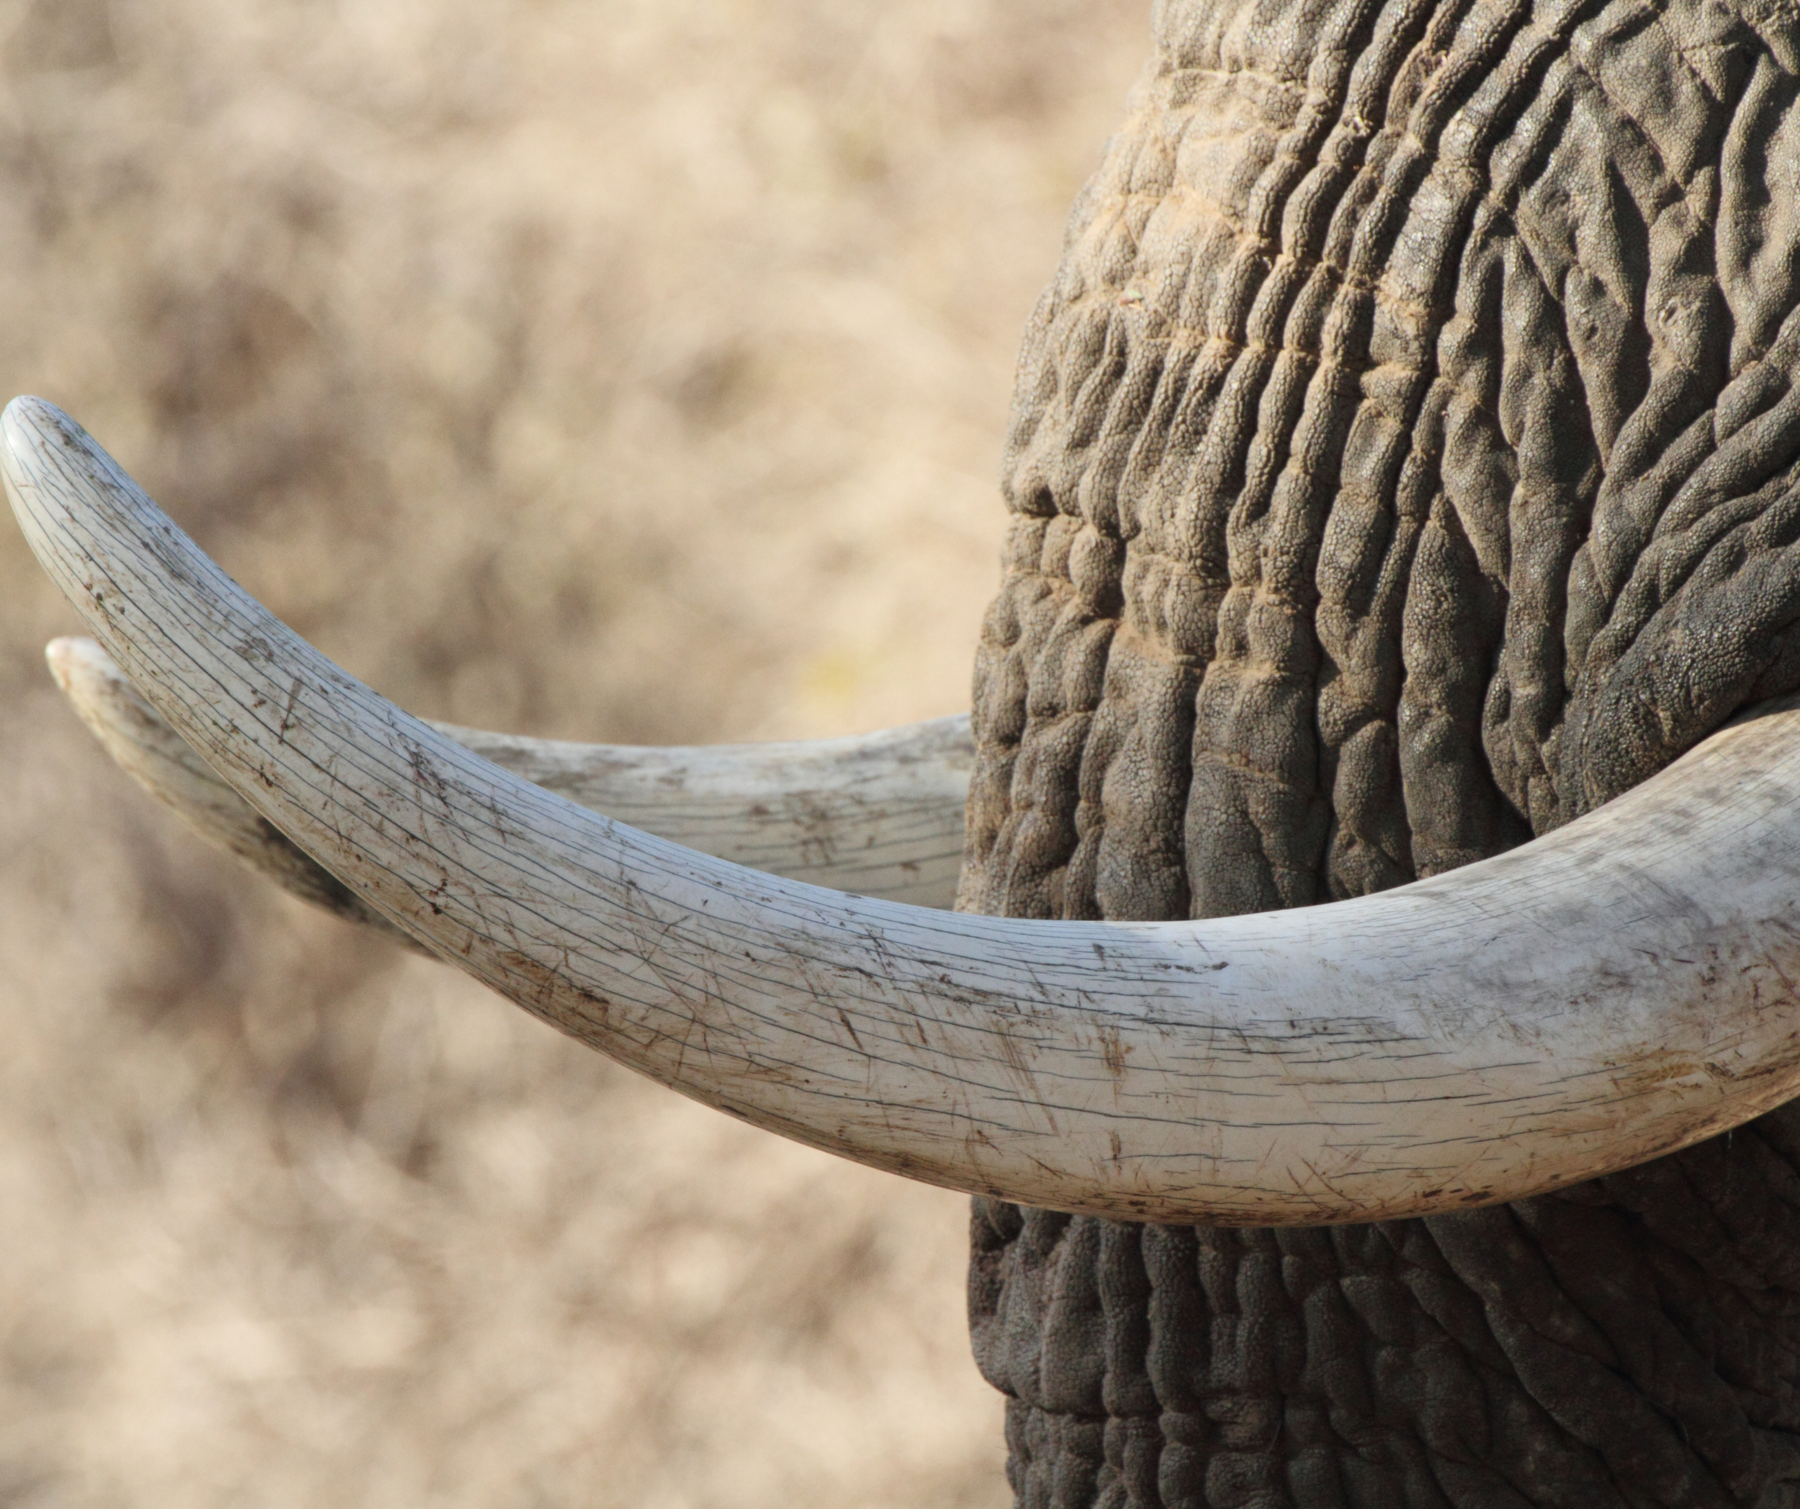 Бивни слона. Слон с рогами. Слоновий бивень. Слоновая кость бивень. Elephant tusks